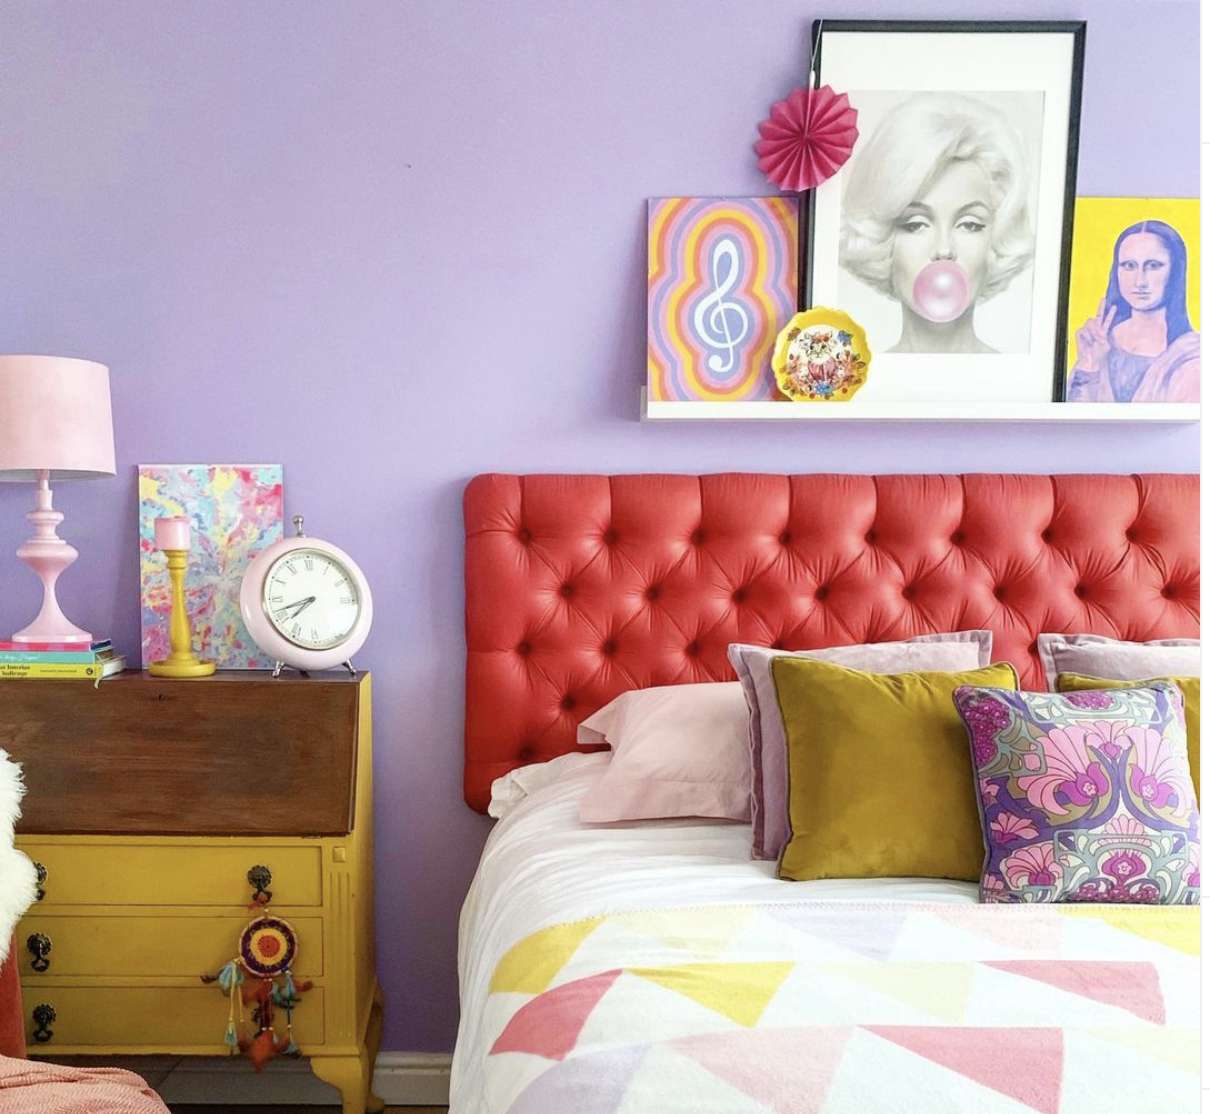 quarto eclético de cores vivas com paredes roxas, edredom de padrão triangular, cômoda amarela estilo vintage